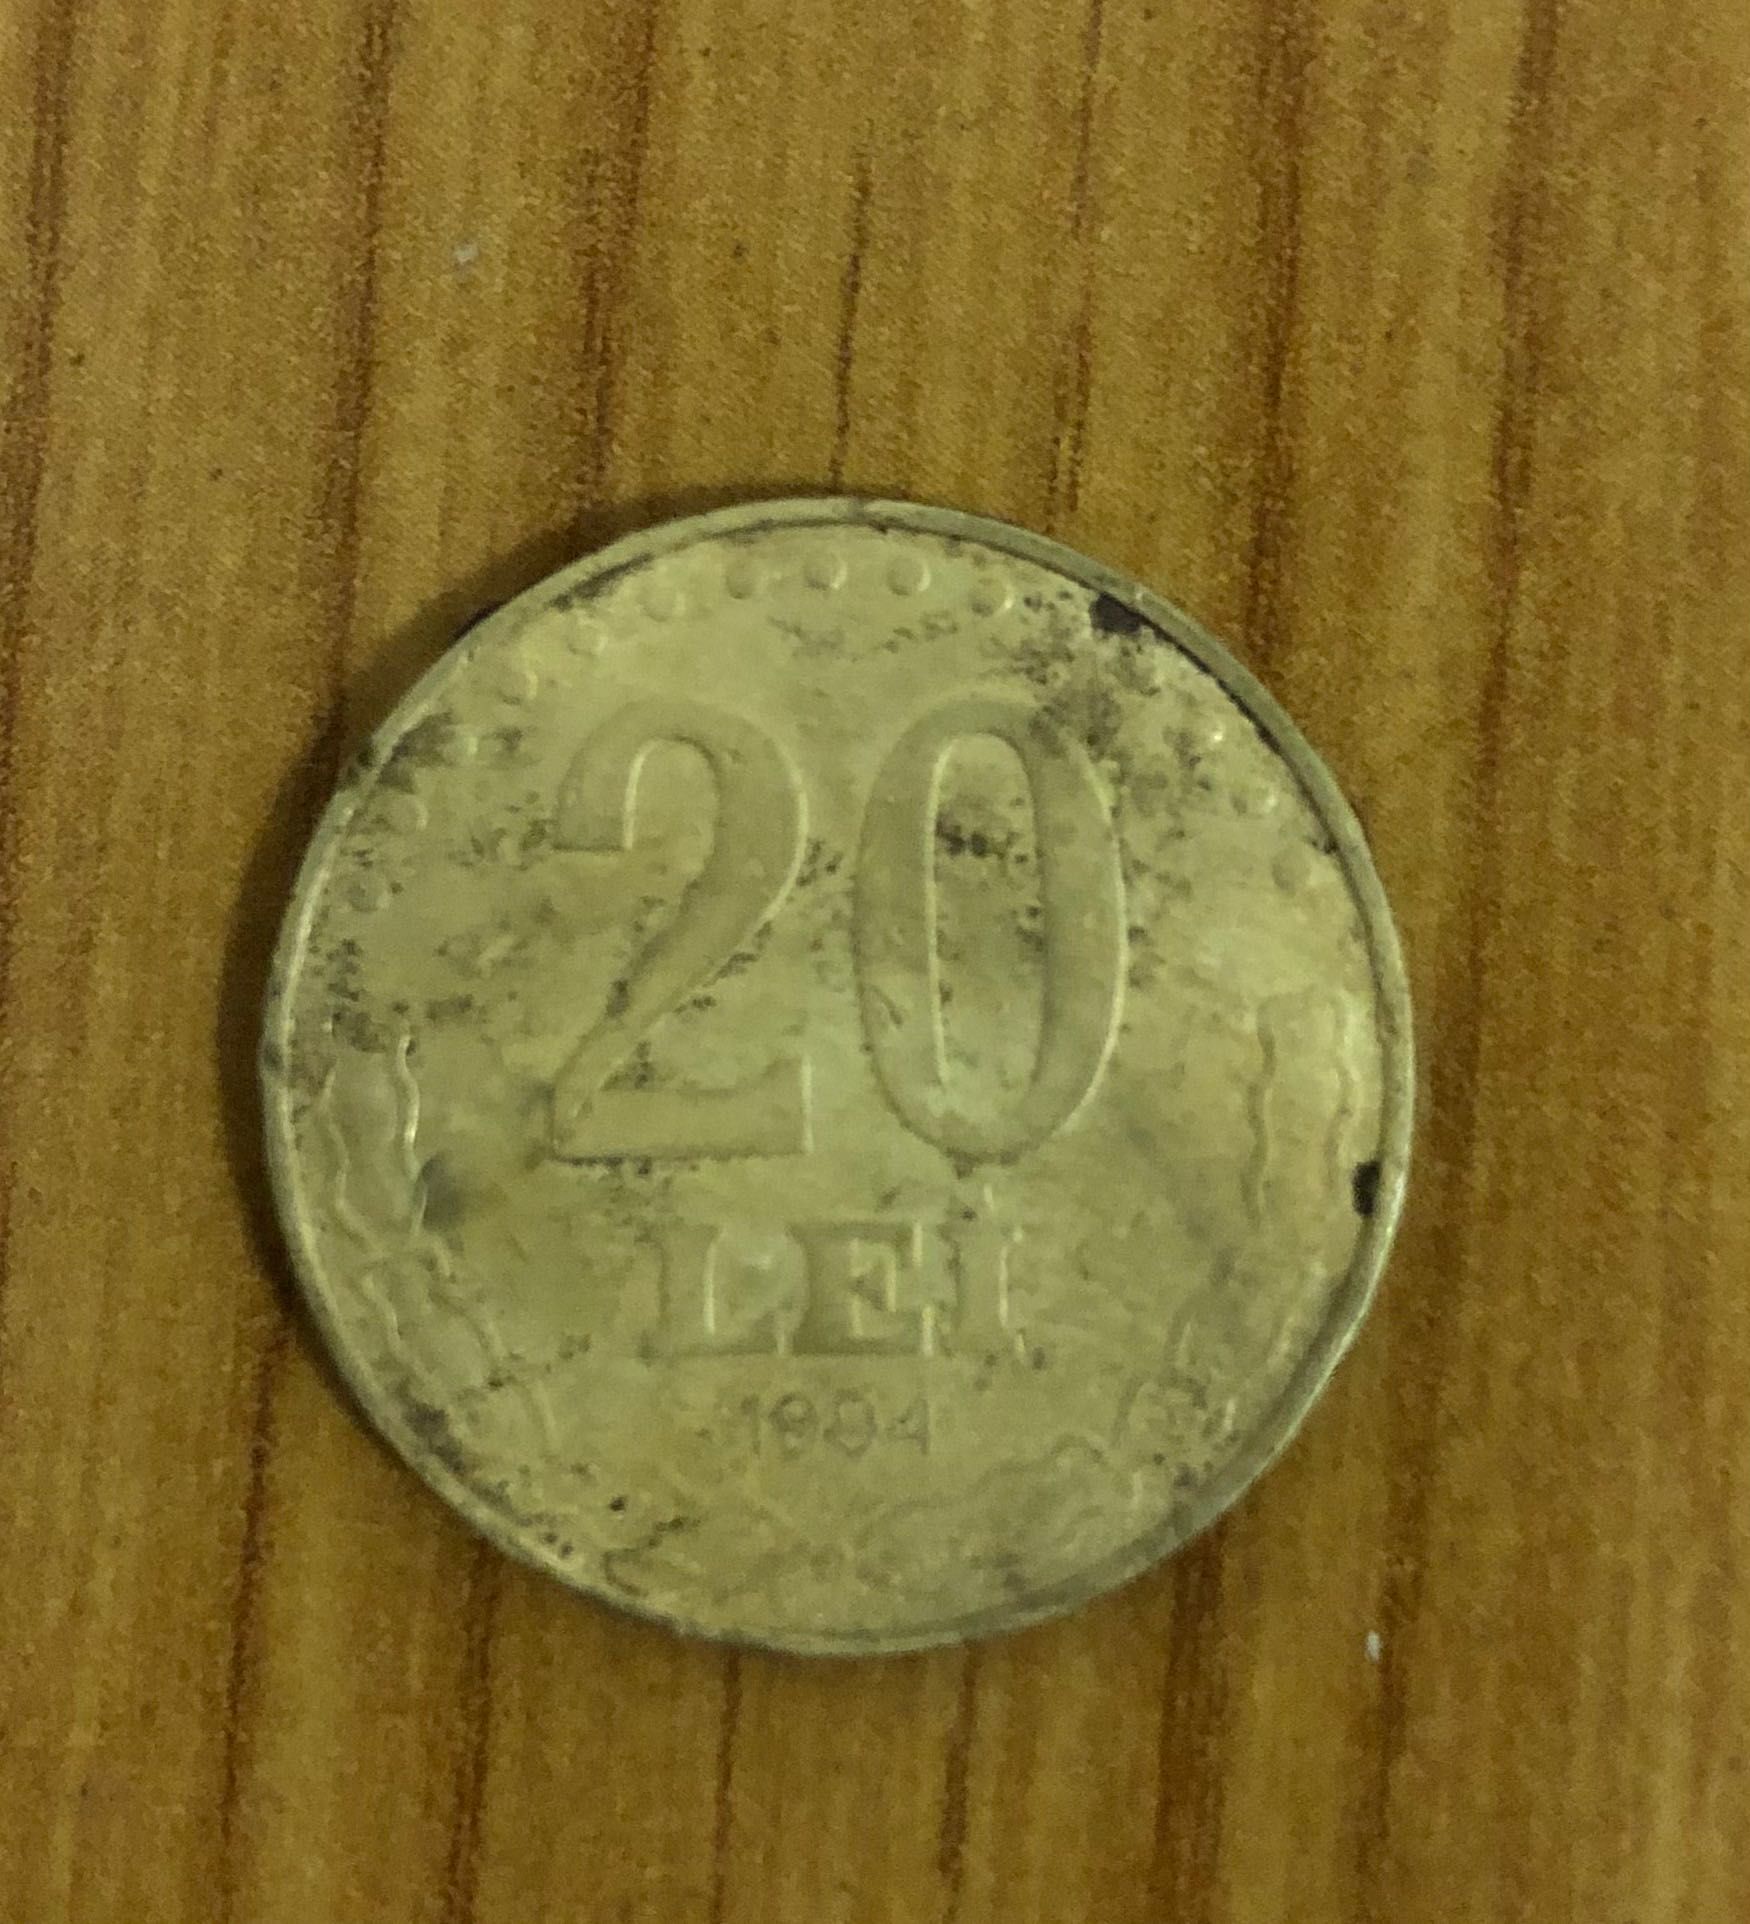 Monedă Ștefan cel Mare 20 lei 1994